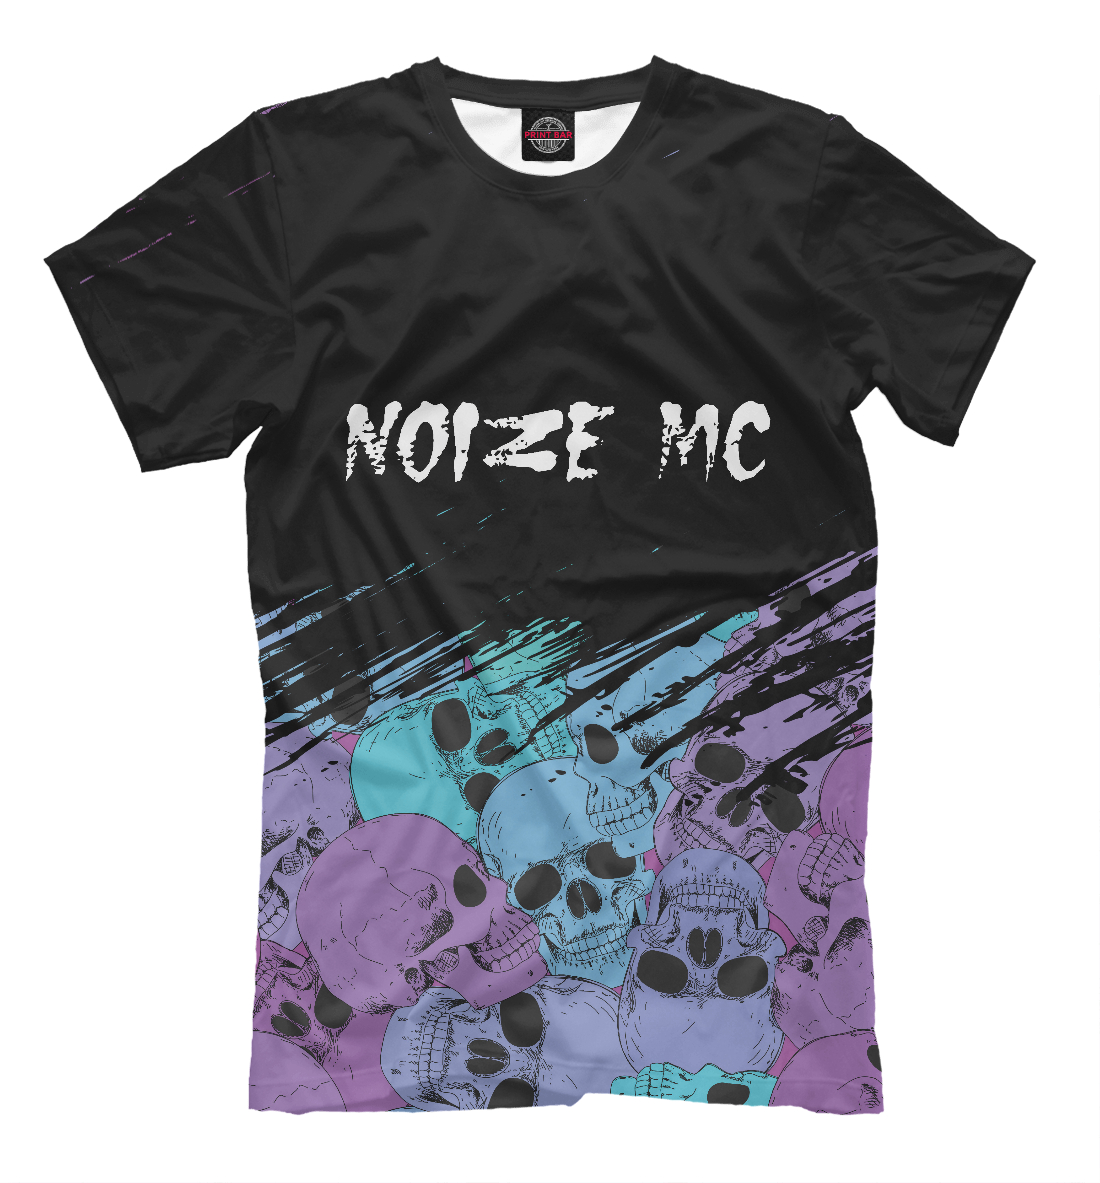 

Noize MC